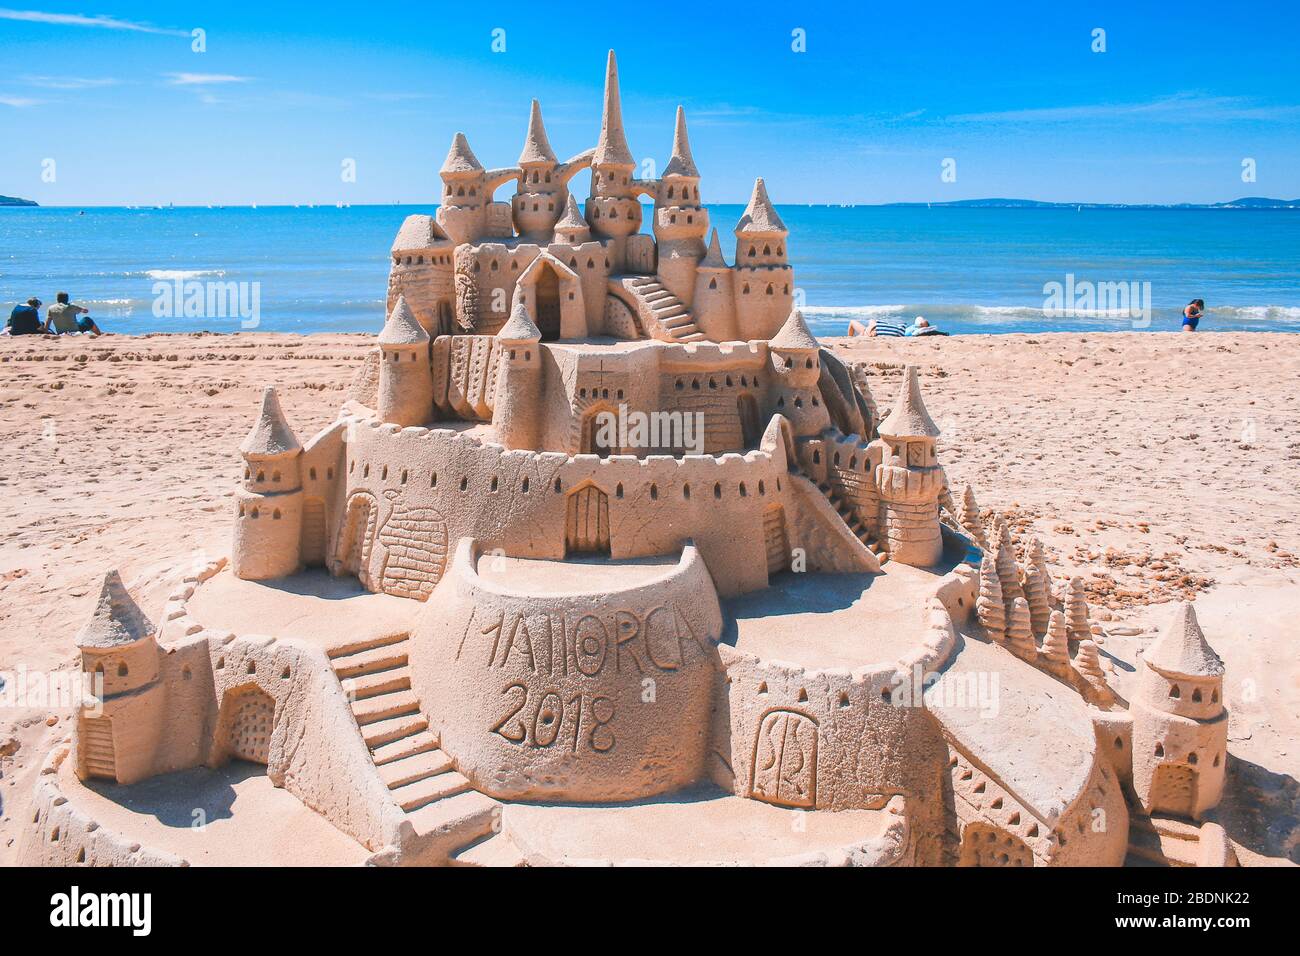 El Arenal, Maiorca, Spagna - Marzo 27 2018: Bellissimo castello di sabbia sulla spiaggia di El Arenal. E' un famoso luogo turistico durante l'estate a Maiorca. Foto Stock